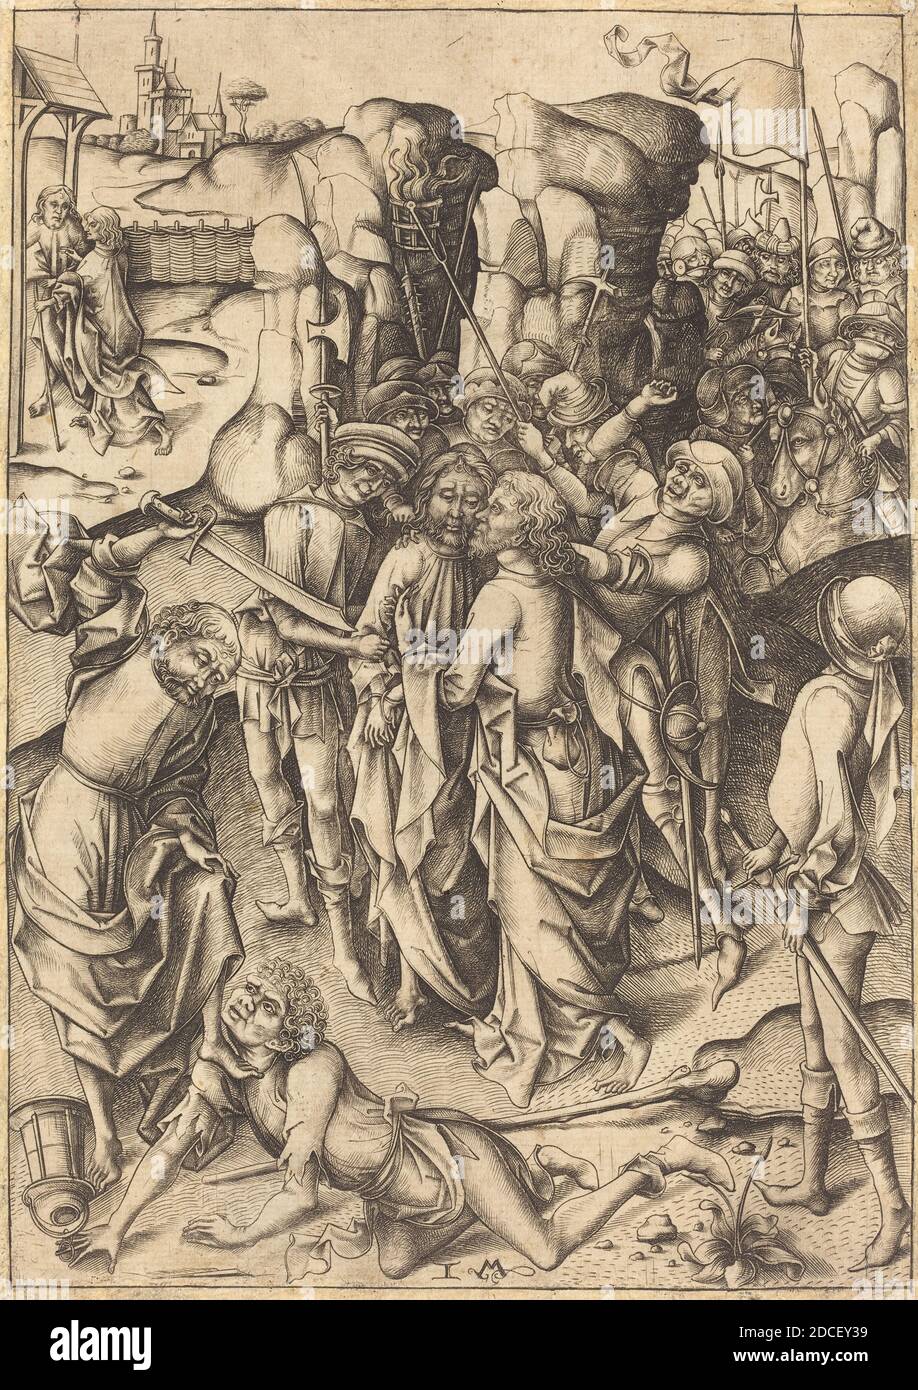 Israhel van Meckenem, (artist), German, c. 1445 - 1503, The Betrayal, Twelve Scenes of the Pasion, (series), c. 1480, engraving Stock Photo